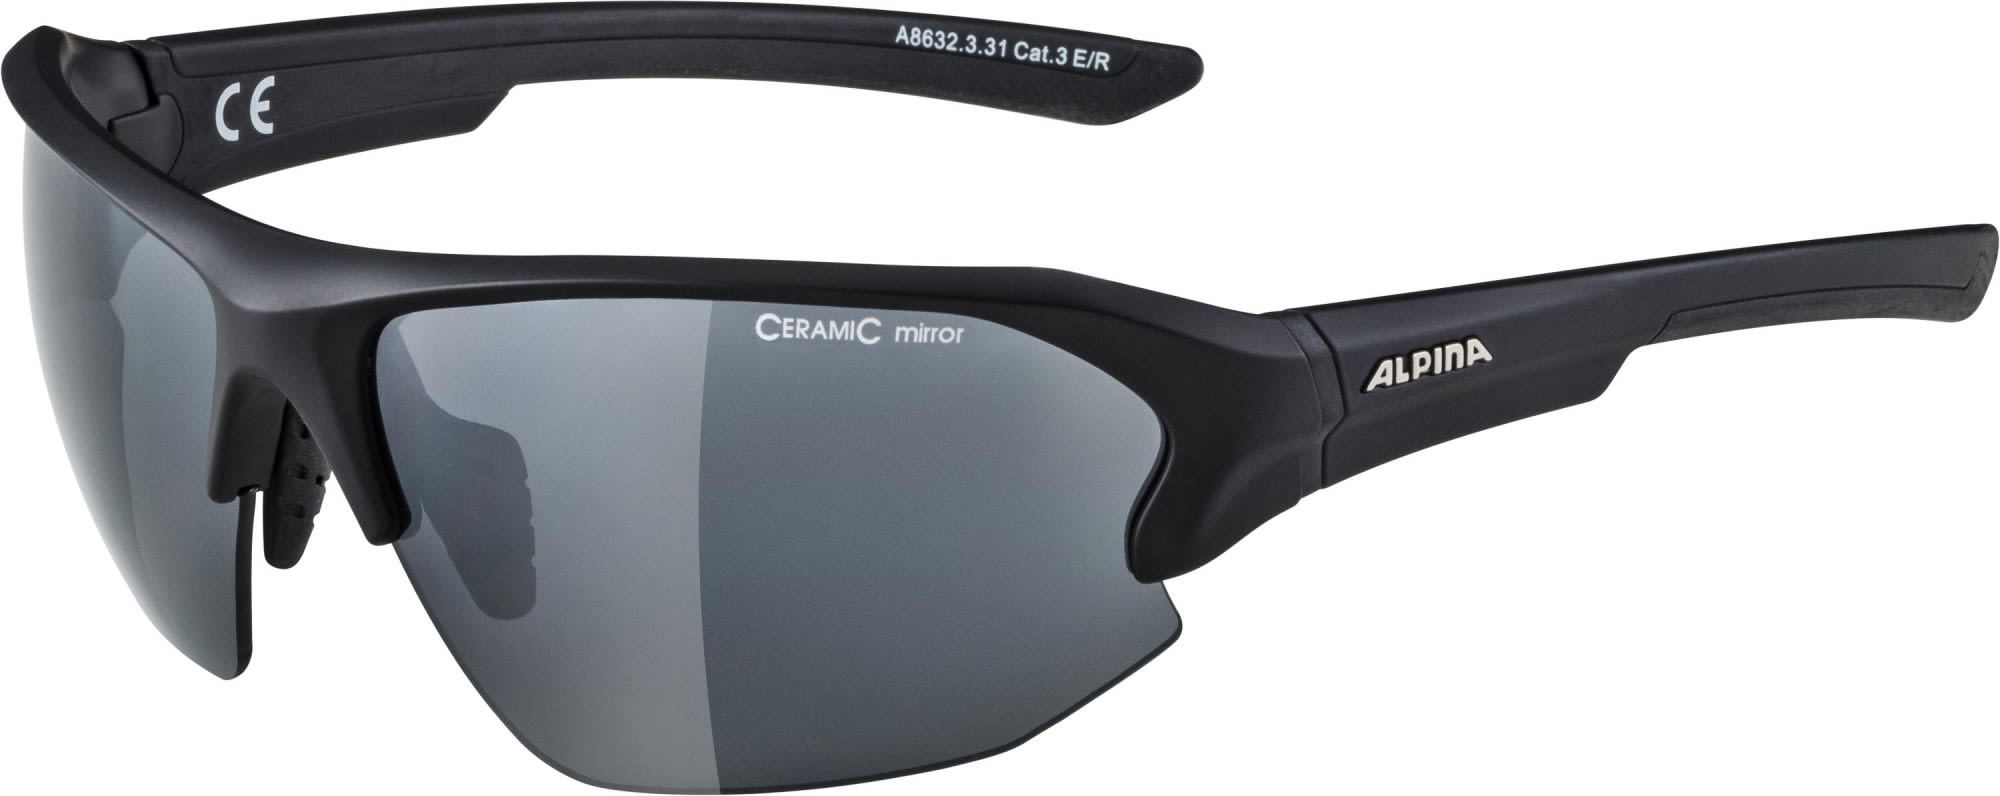 Alpina Hochwertige verspiegelte Allround Sportbrille Black Matt - Black Mirror